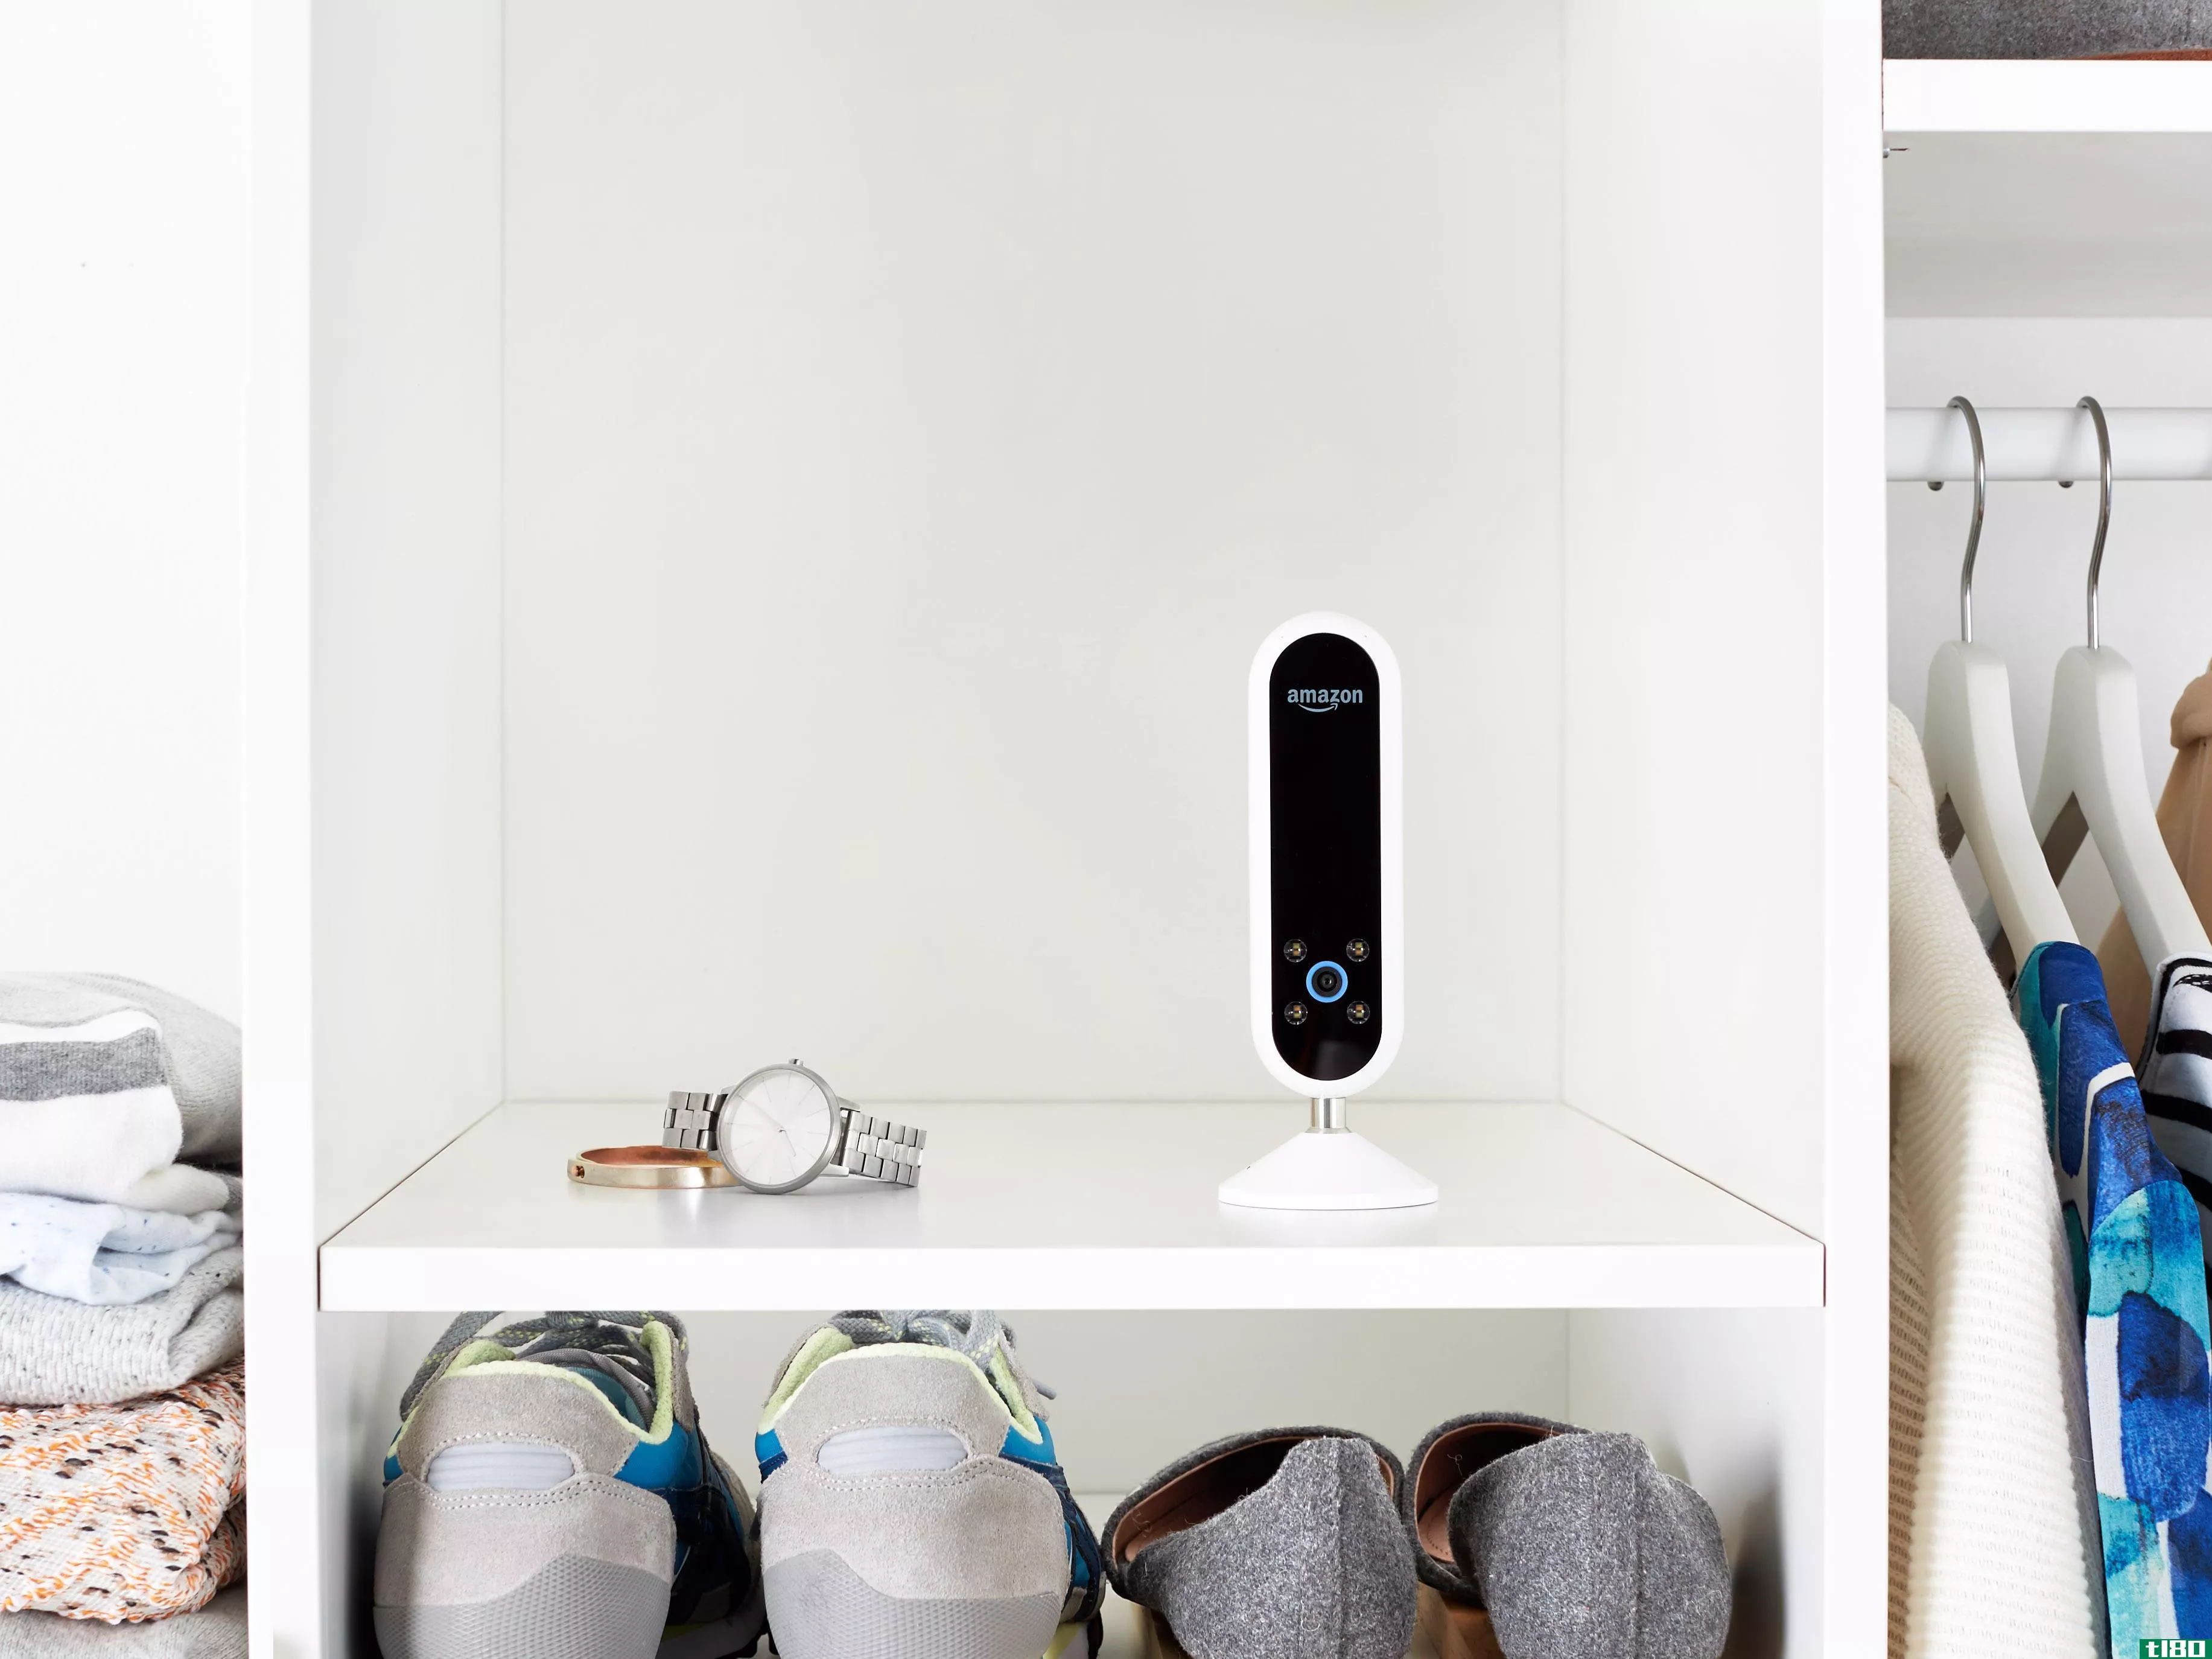 亚马逊的echo spot是一种让摄像头进入卧室的偷偷摸摸的方法